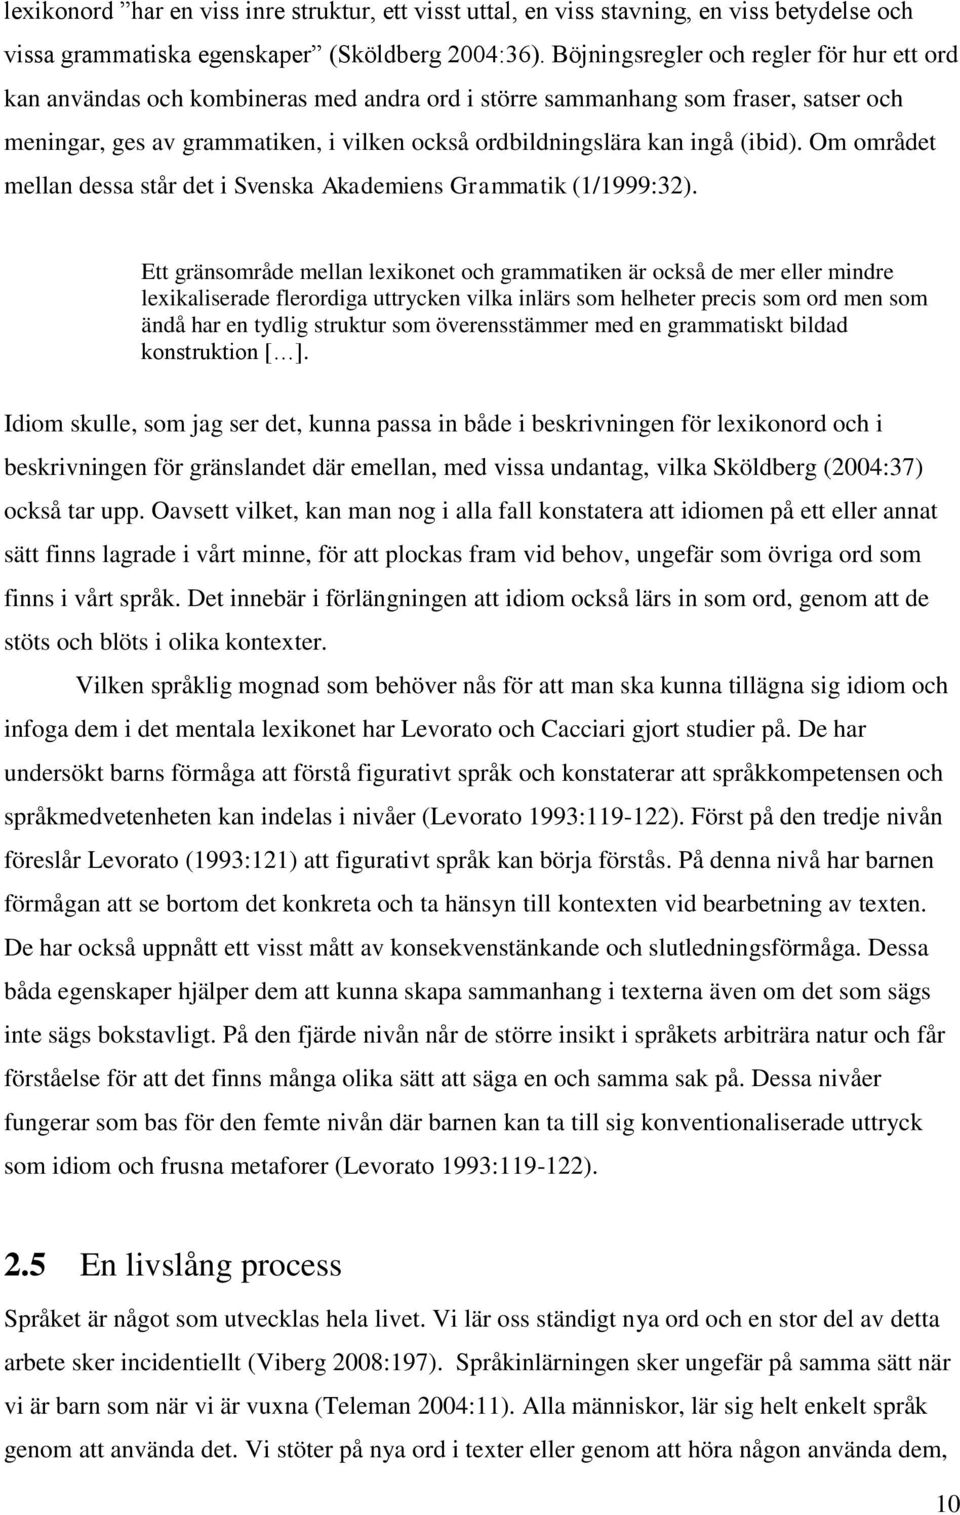 (ibid). Om området mellan dessa står det i Svenska Akademiens Grammatik (1/1999:32).